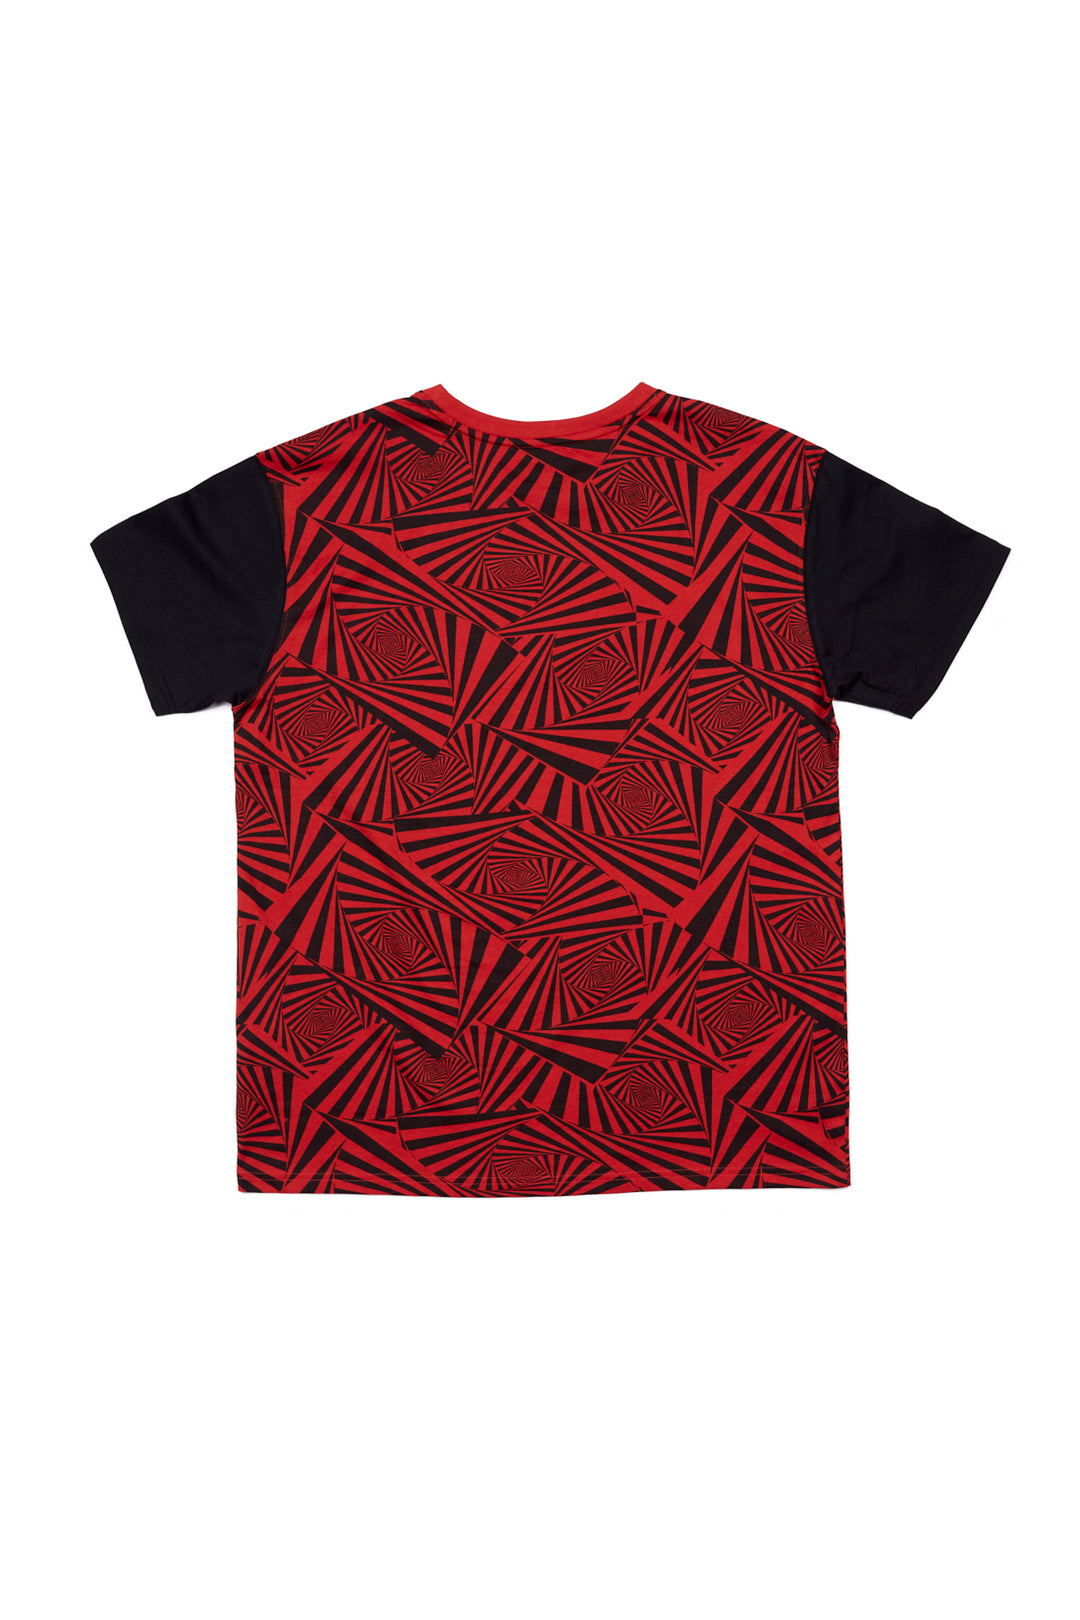 Spirals Aop Logo T-Shirt- Red/Black